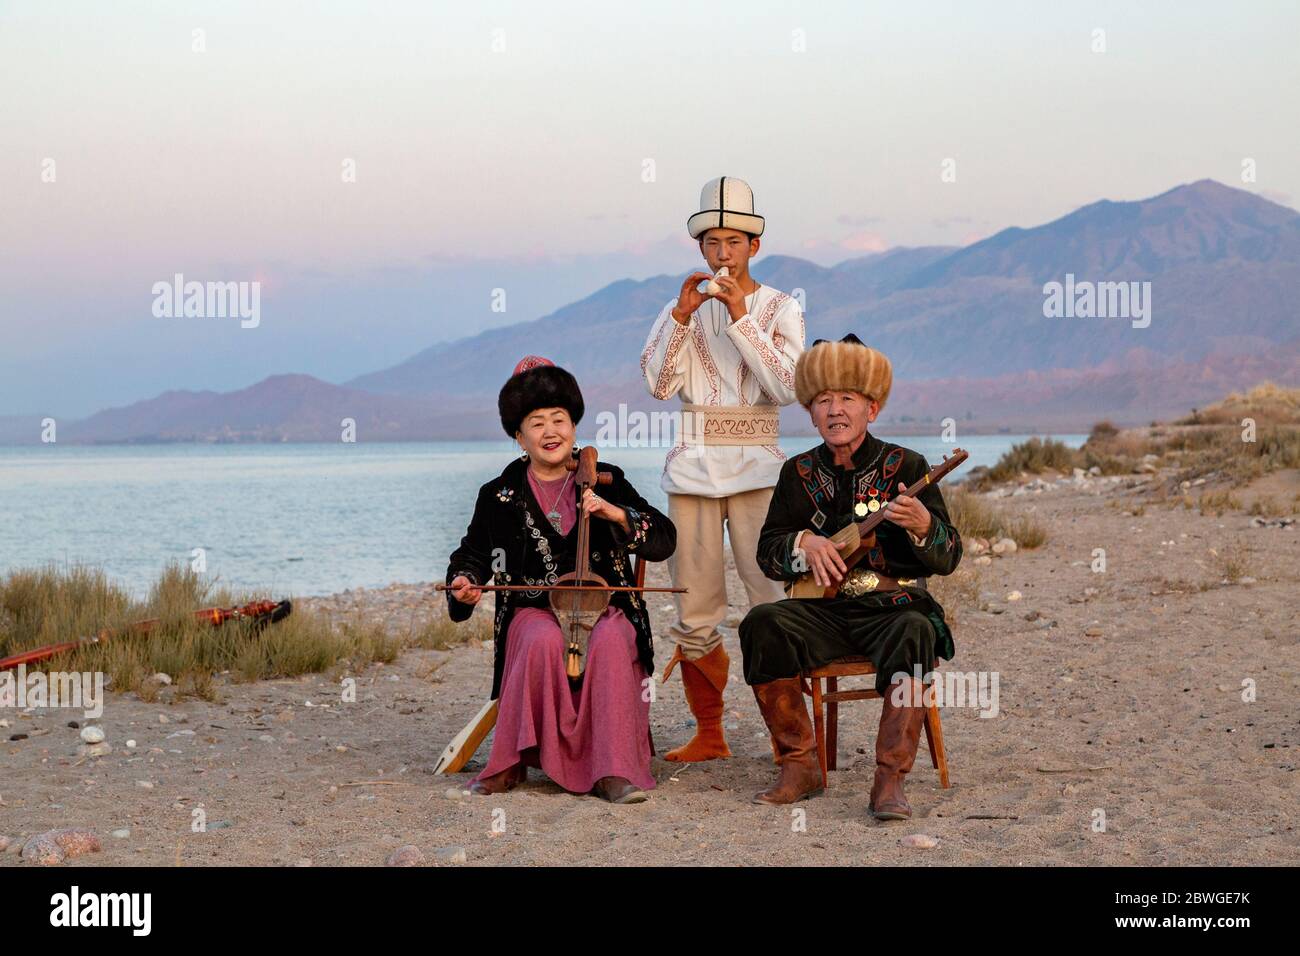 Musiciens kirghizes jouant des instruments traditionnels. Homme en blanc pièces Choor, dame joue Kyl Kiak, homme assis joue Komuz, à Issyik Kul, Kirghizistan Banque D'Images